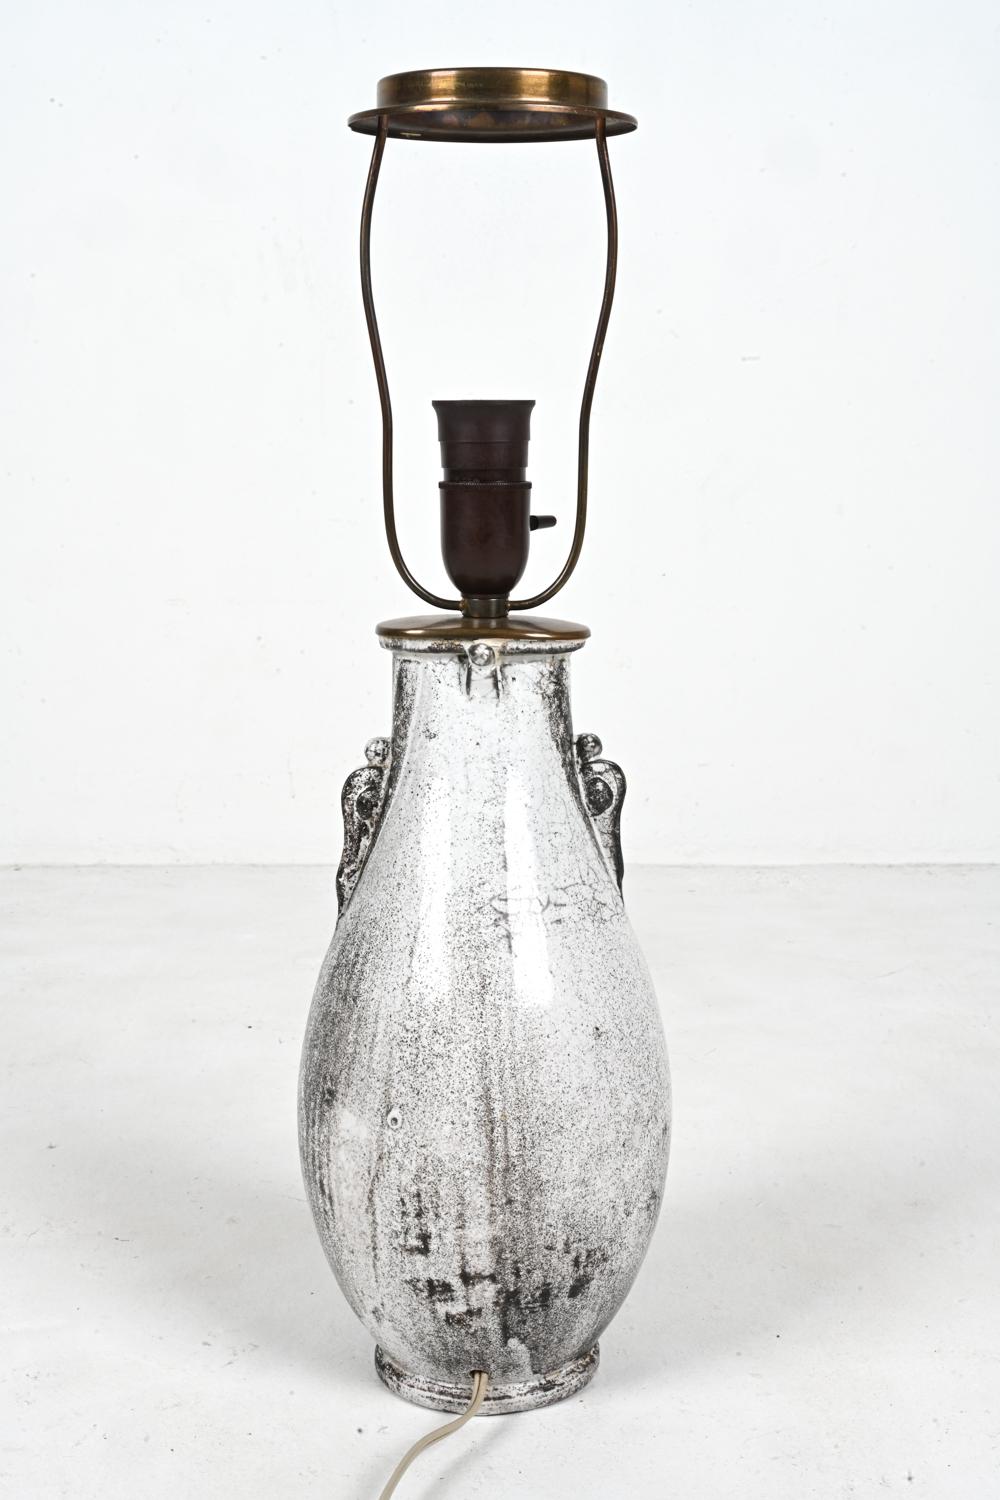 Rare Studio Ceramic Lamp by Svend Hammershøi for Kähler, Denmark, c. 1940 For Sale 6